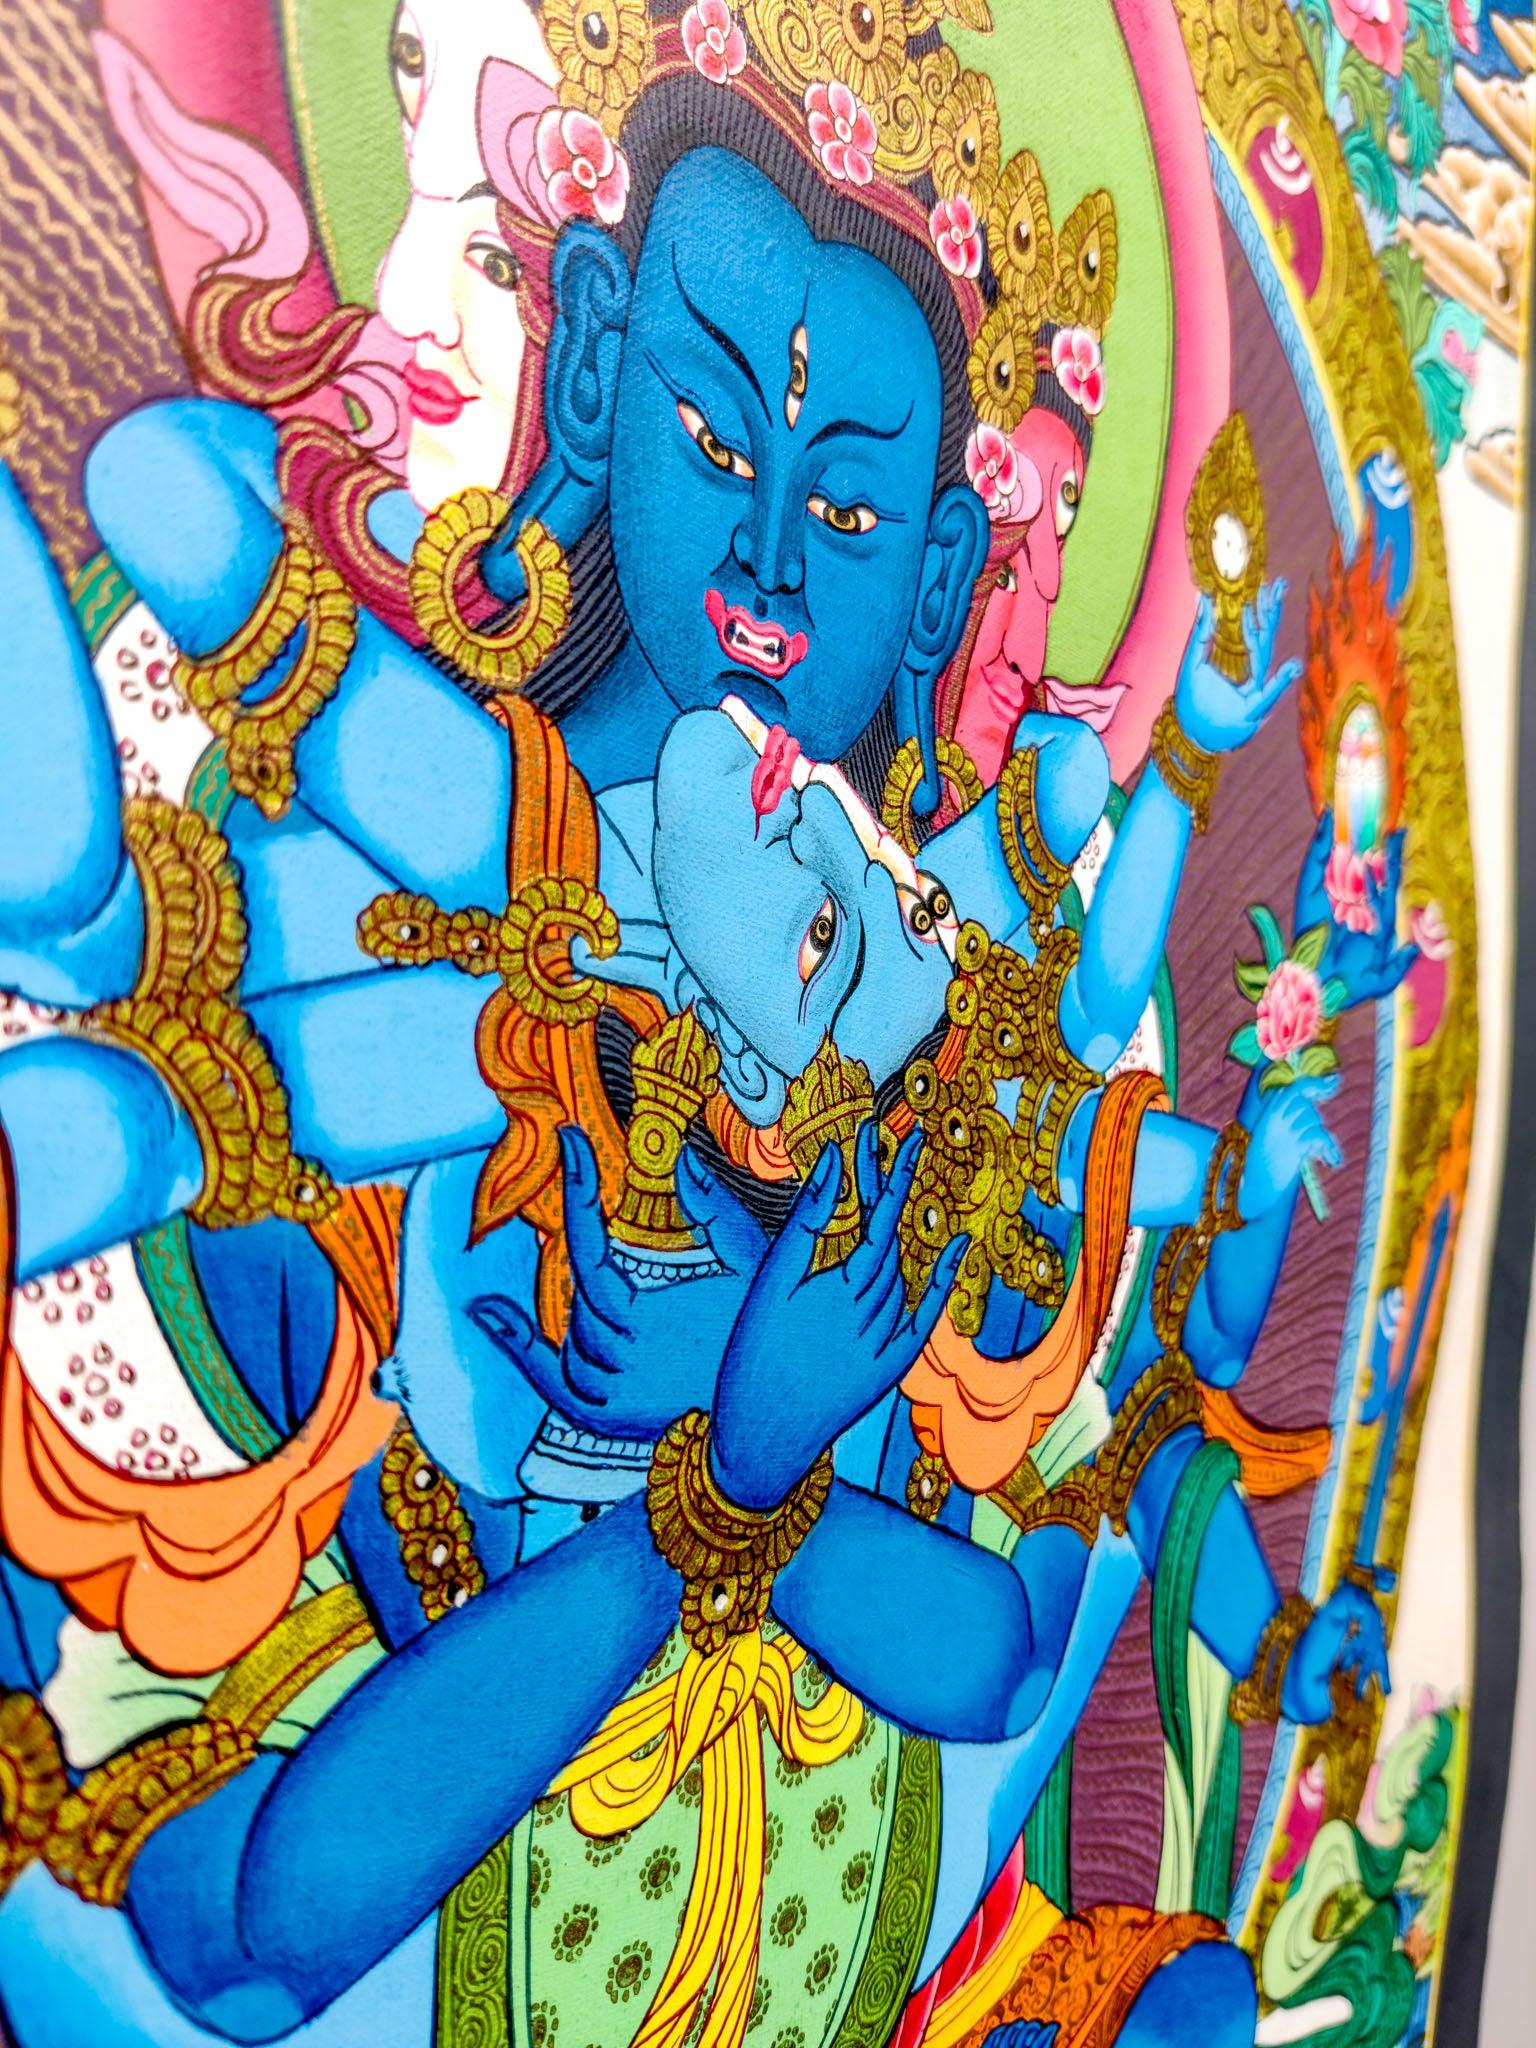 Khorlo Demchong and Heruka Thangka painting - Tibetan Art